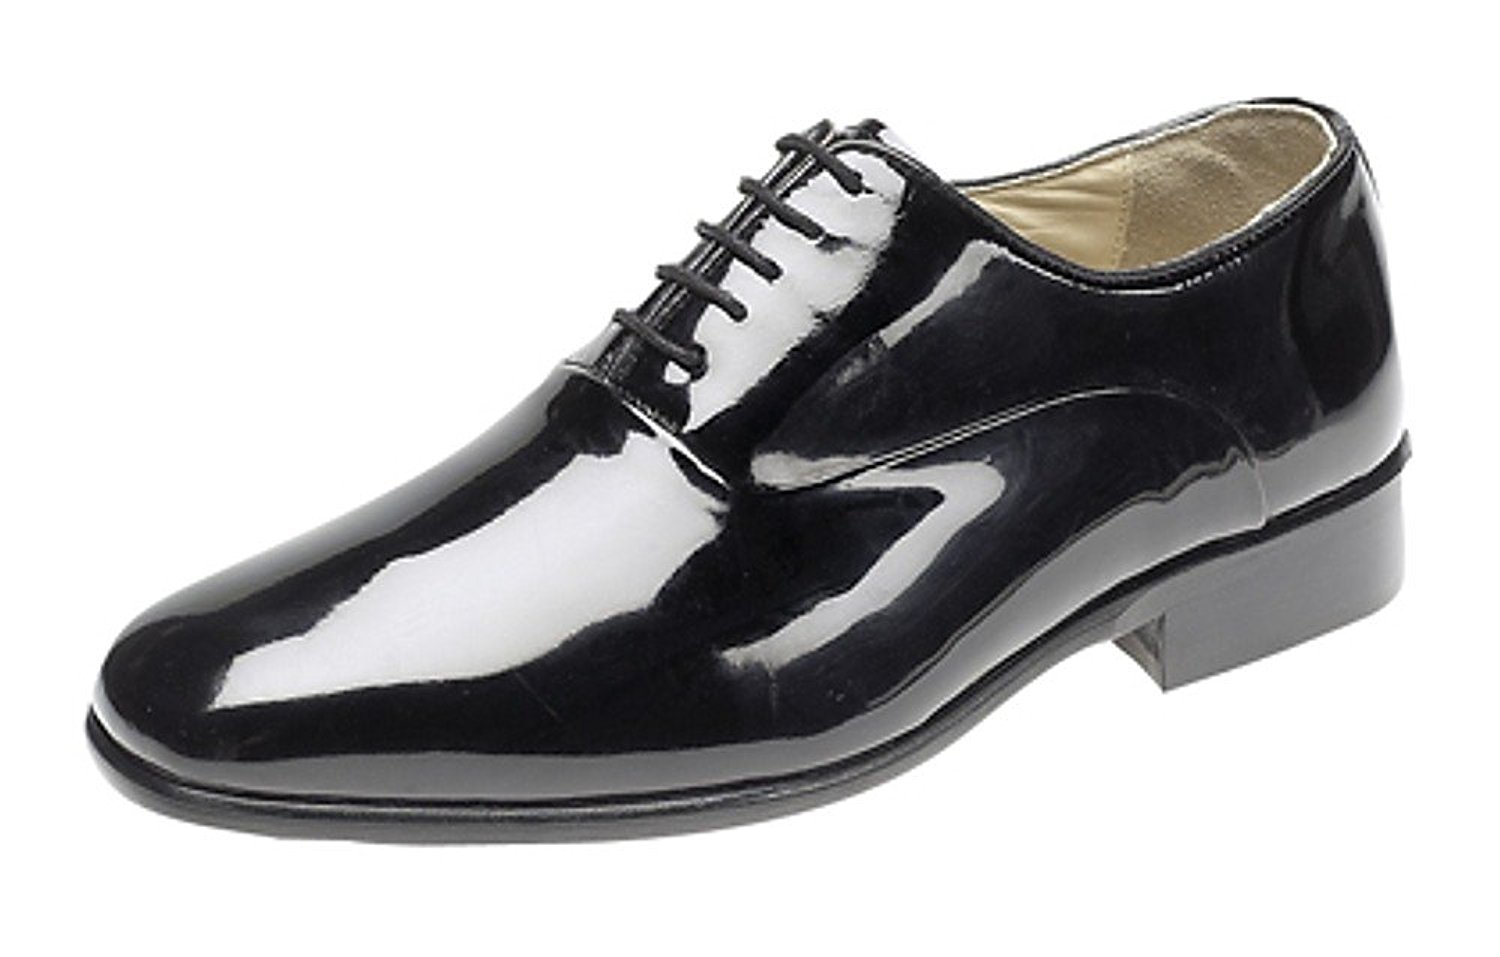 black patent shoes mens evening / uniform / oxford shoes black patent leather u0026 leather sole xieuxjo